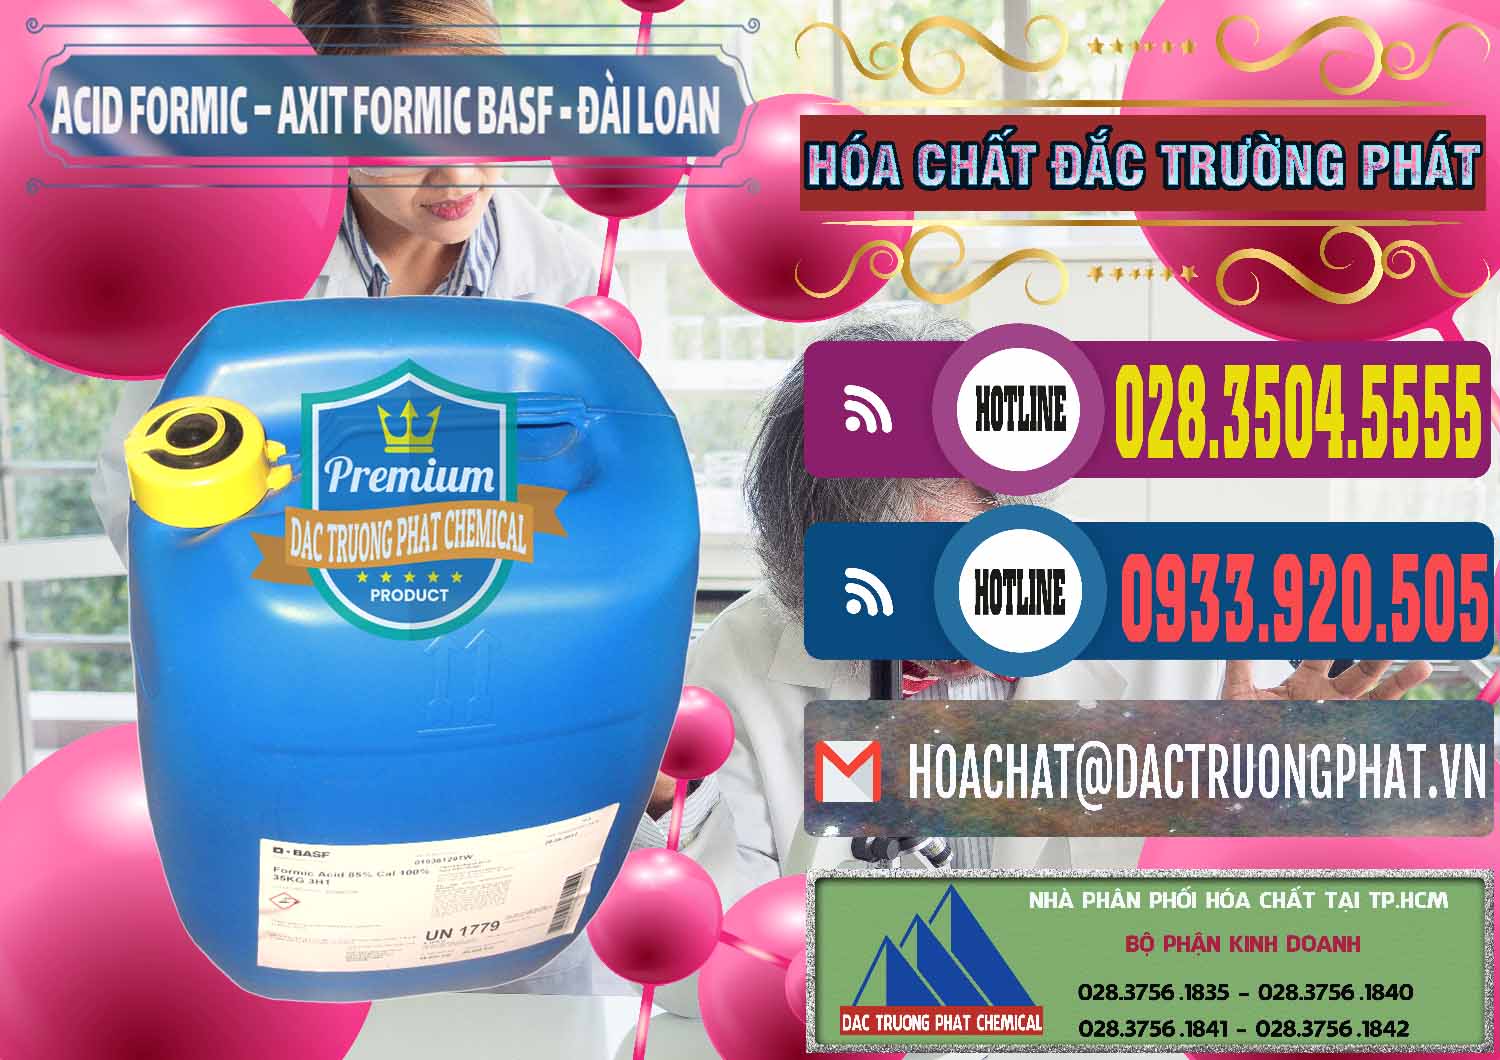 Cty chuyên kinh doanh - bán Acid Formic - Axit Formic 85% BASF Đài Loan Taiwan - 0027 - Đơn vị cung cấp & kinh doanh hóa chất tại TP.HCM - muabanhoachat.com.vn